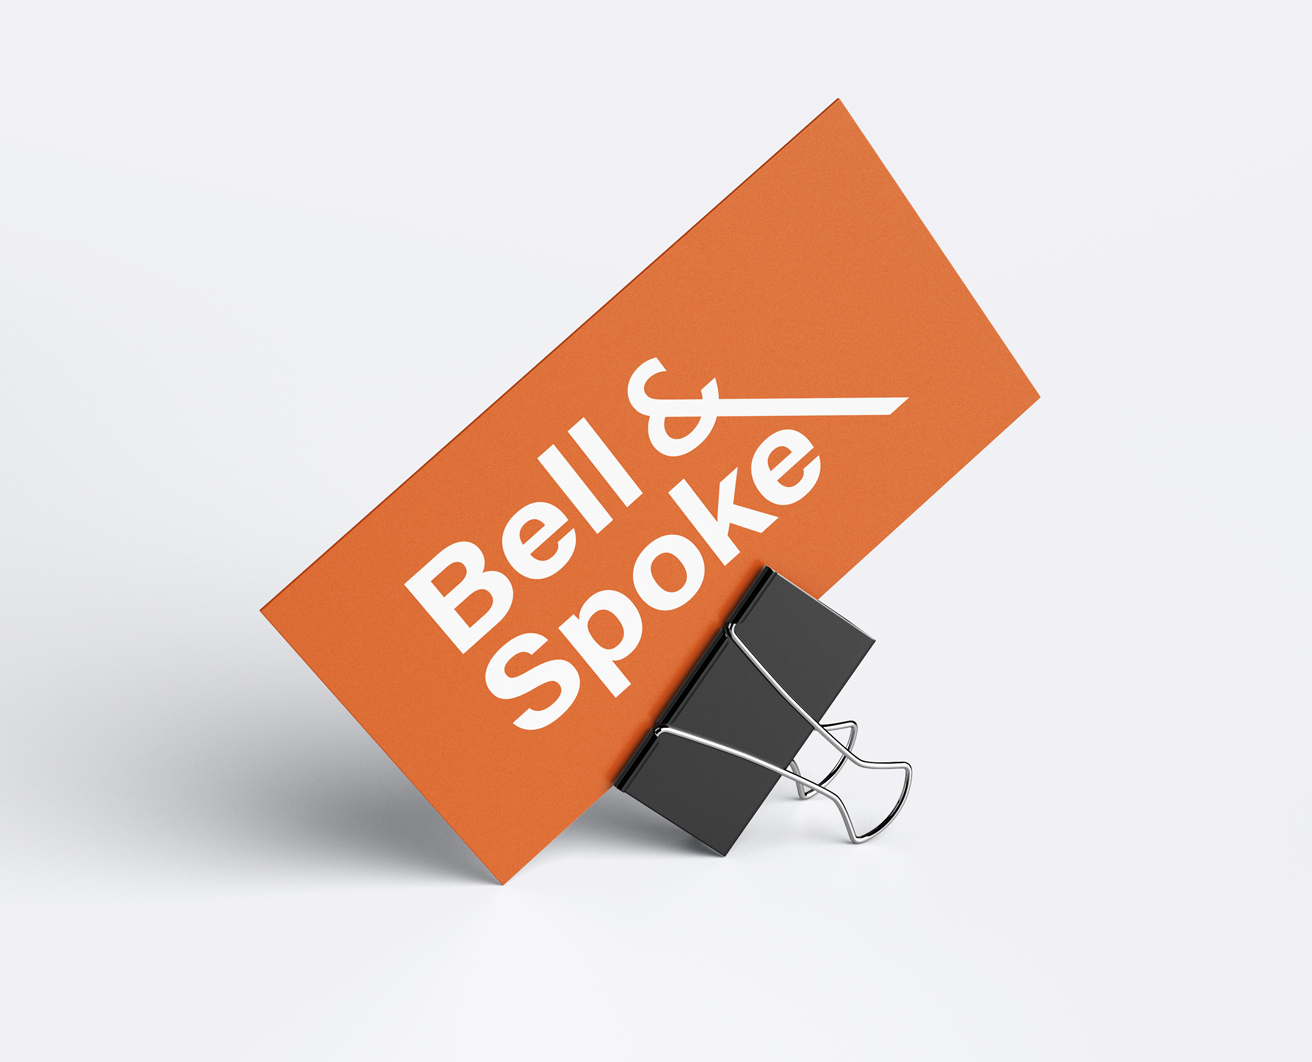 Bell & Spoke